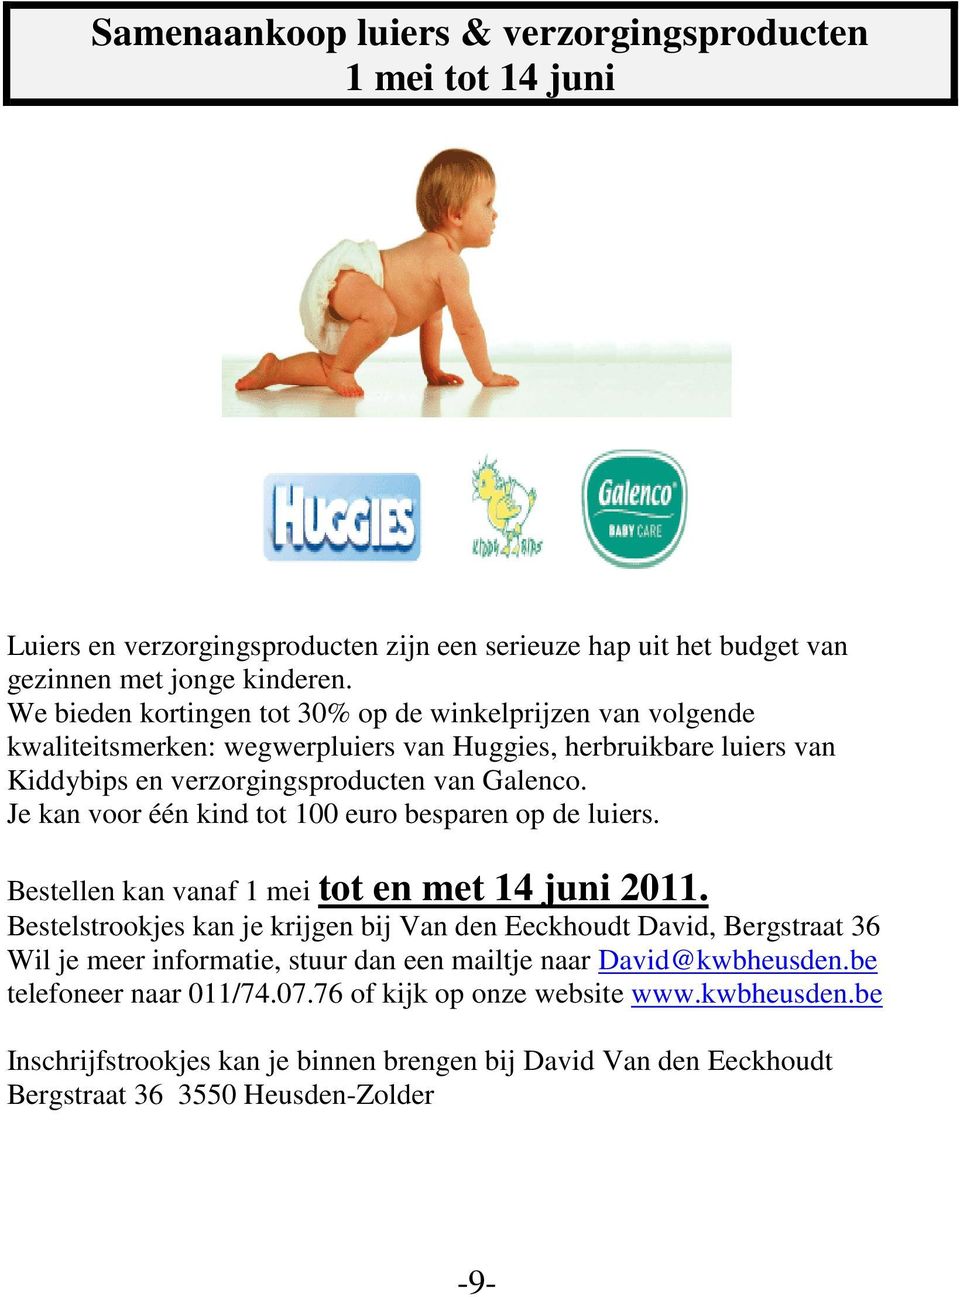 Je kan voor één kind tot 100 euro besparen op de luiers. Bestellen kan vanaf 1 mei tot en met 14 juni 2011.